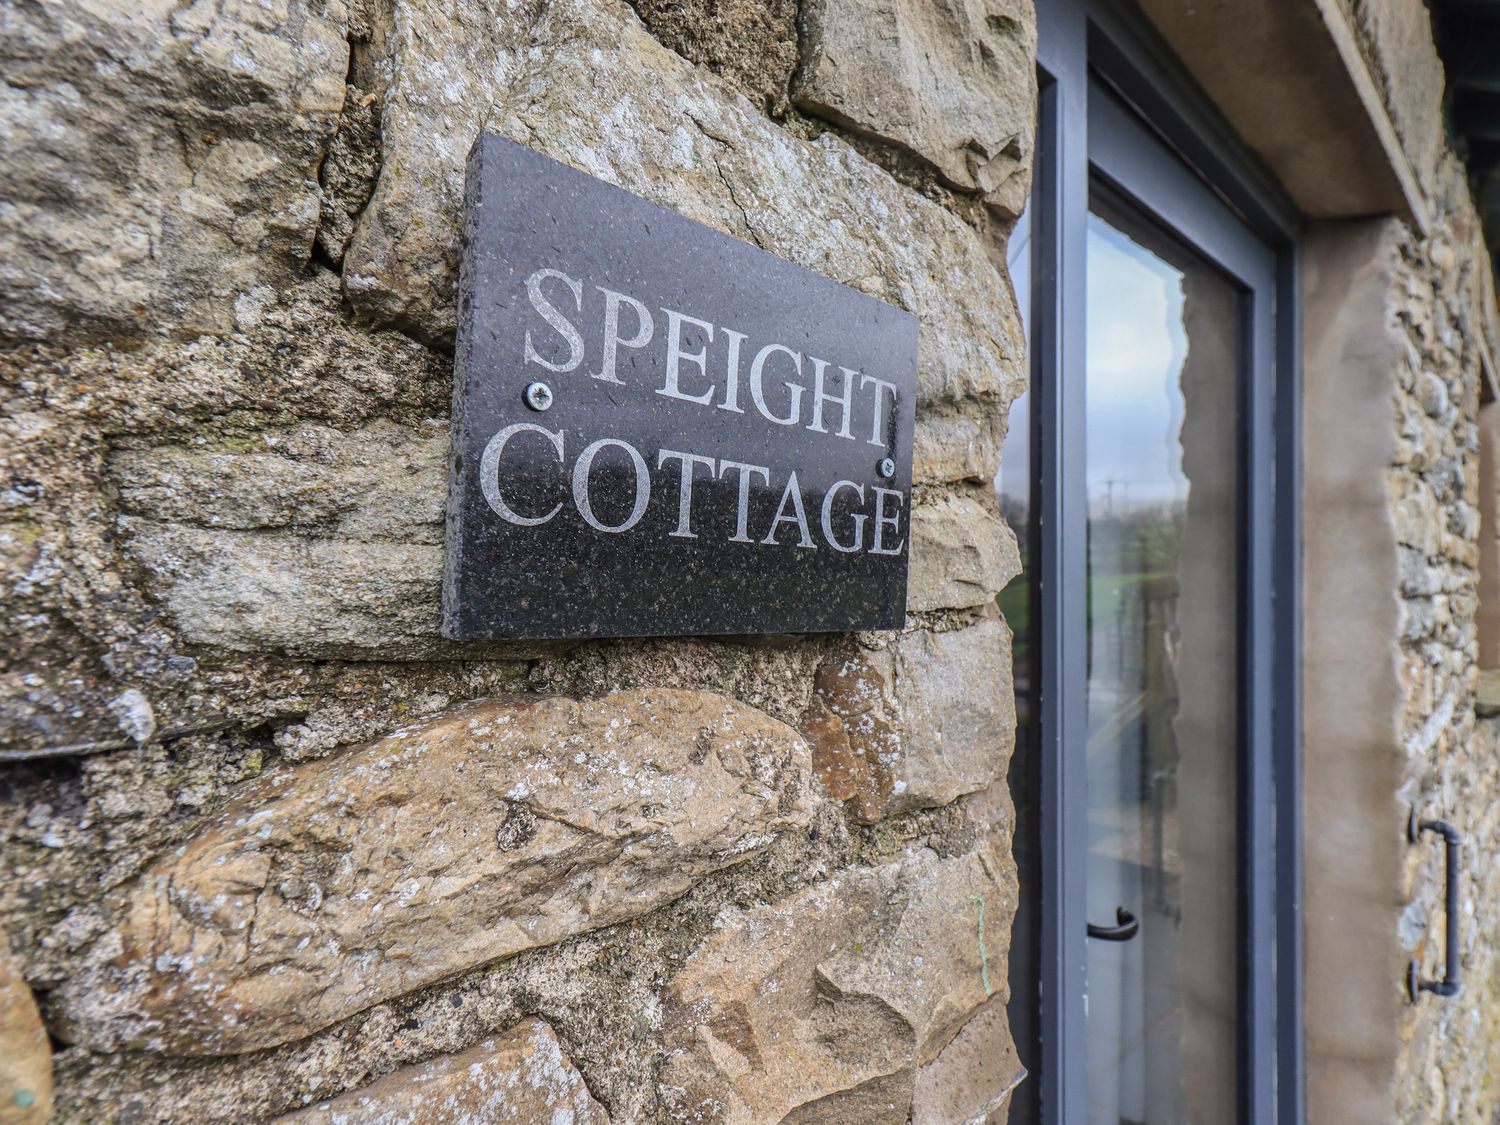 Speight Cottage, Cumbria